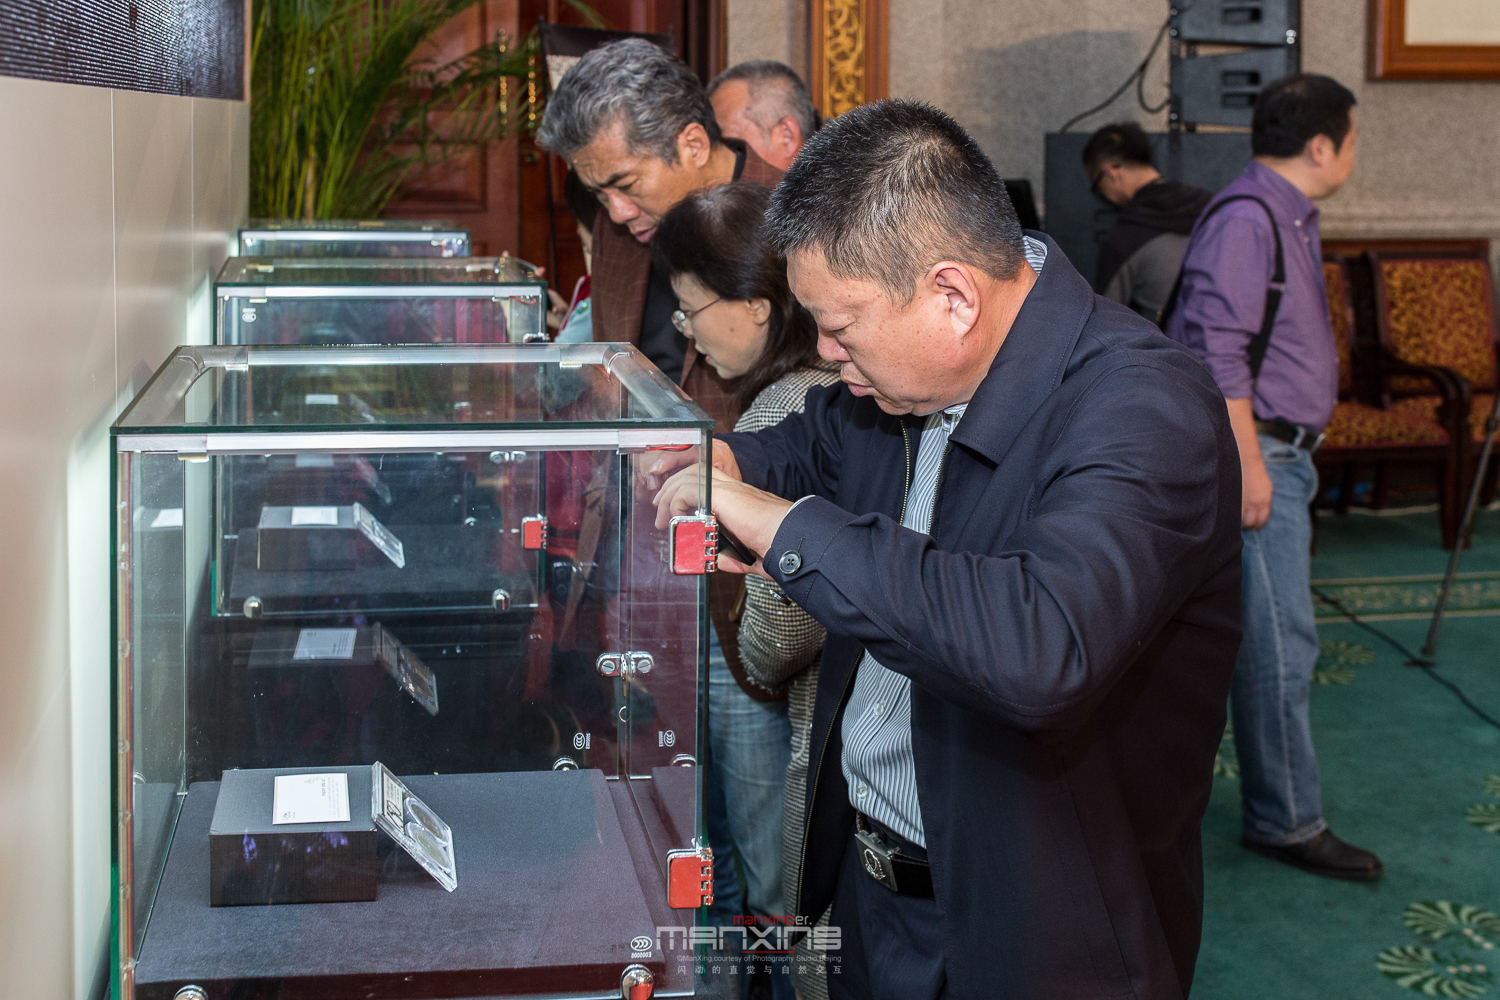 “纪念孙中山诞辰150周年百年银元珍藏套装”在京首发